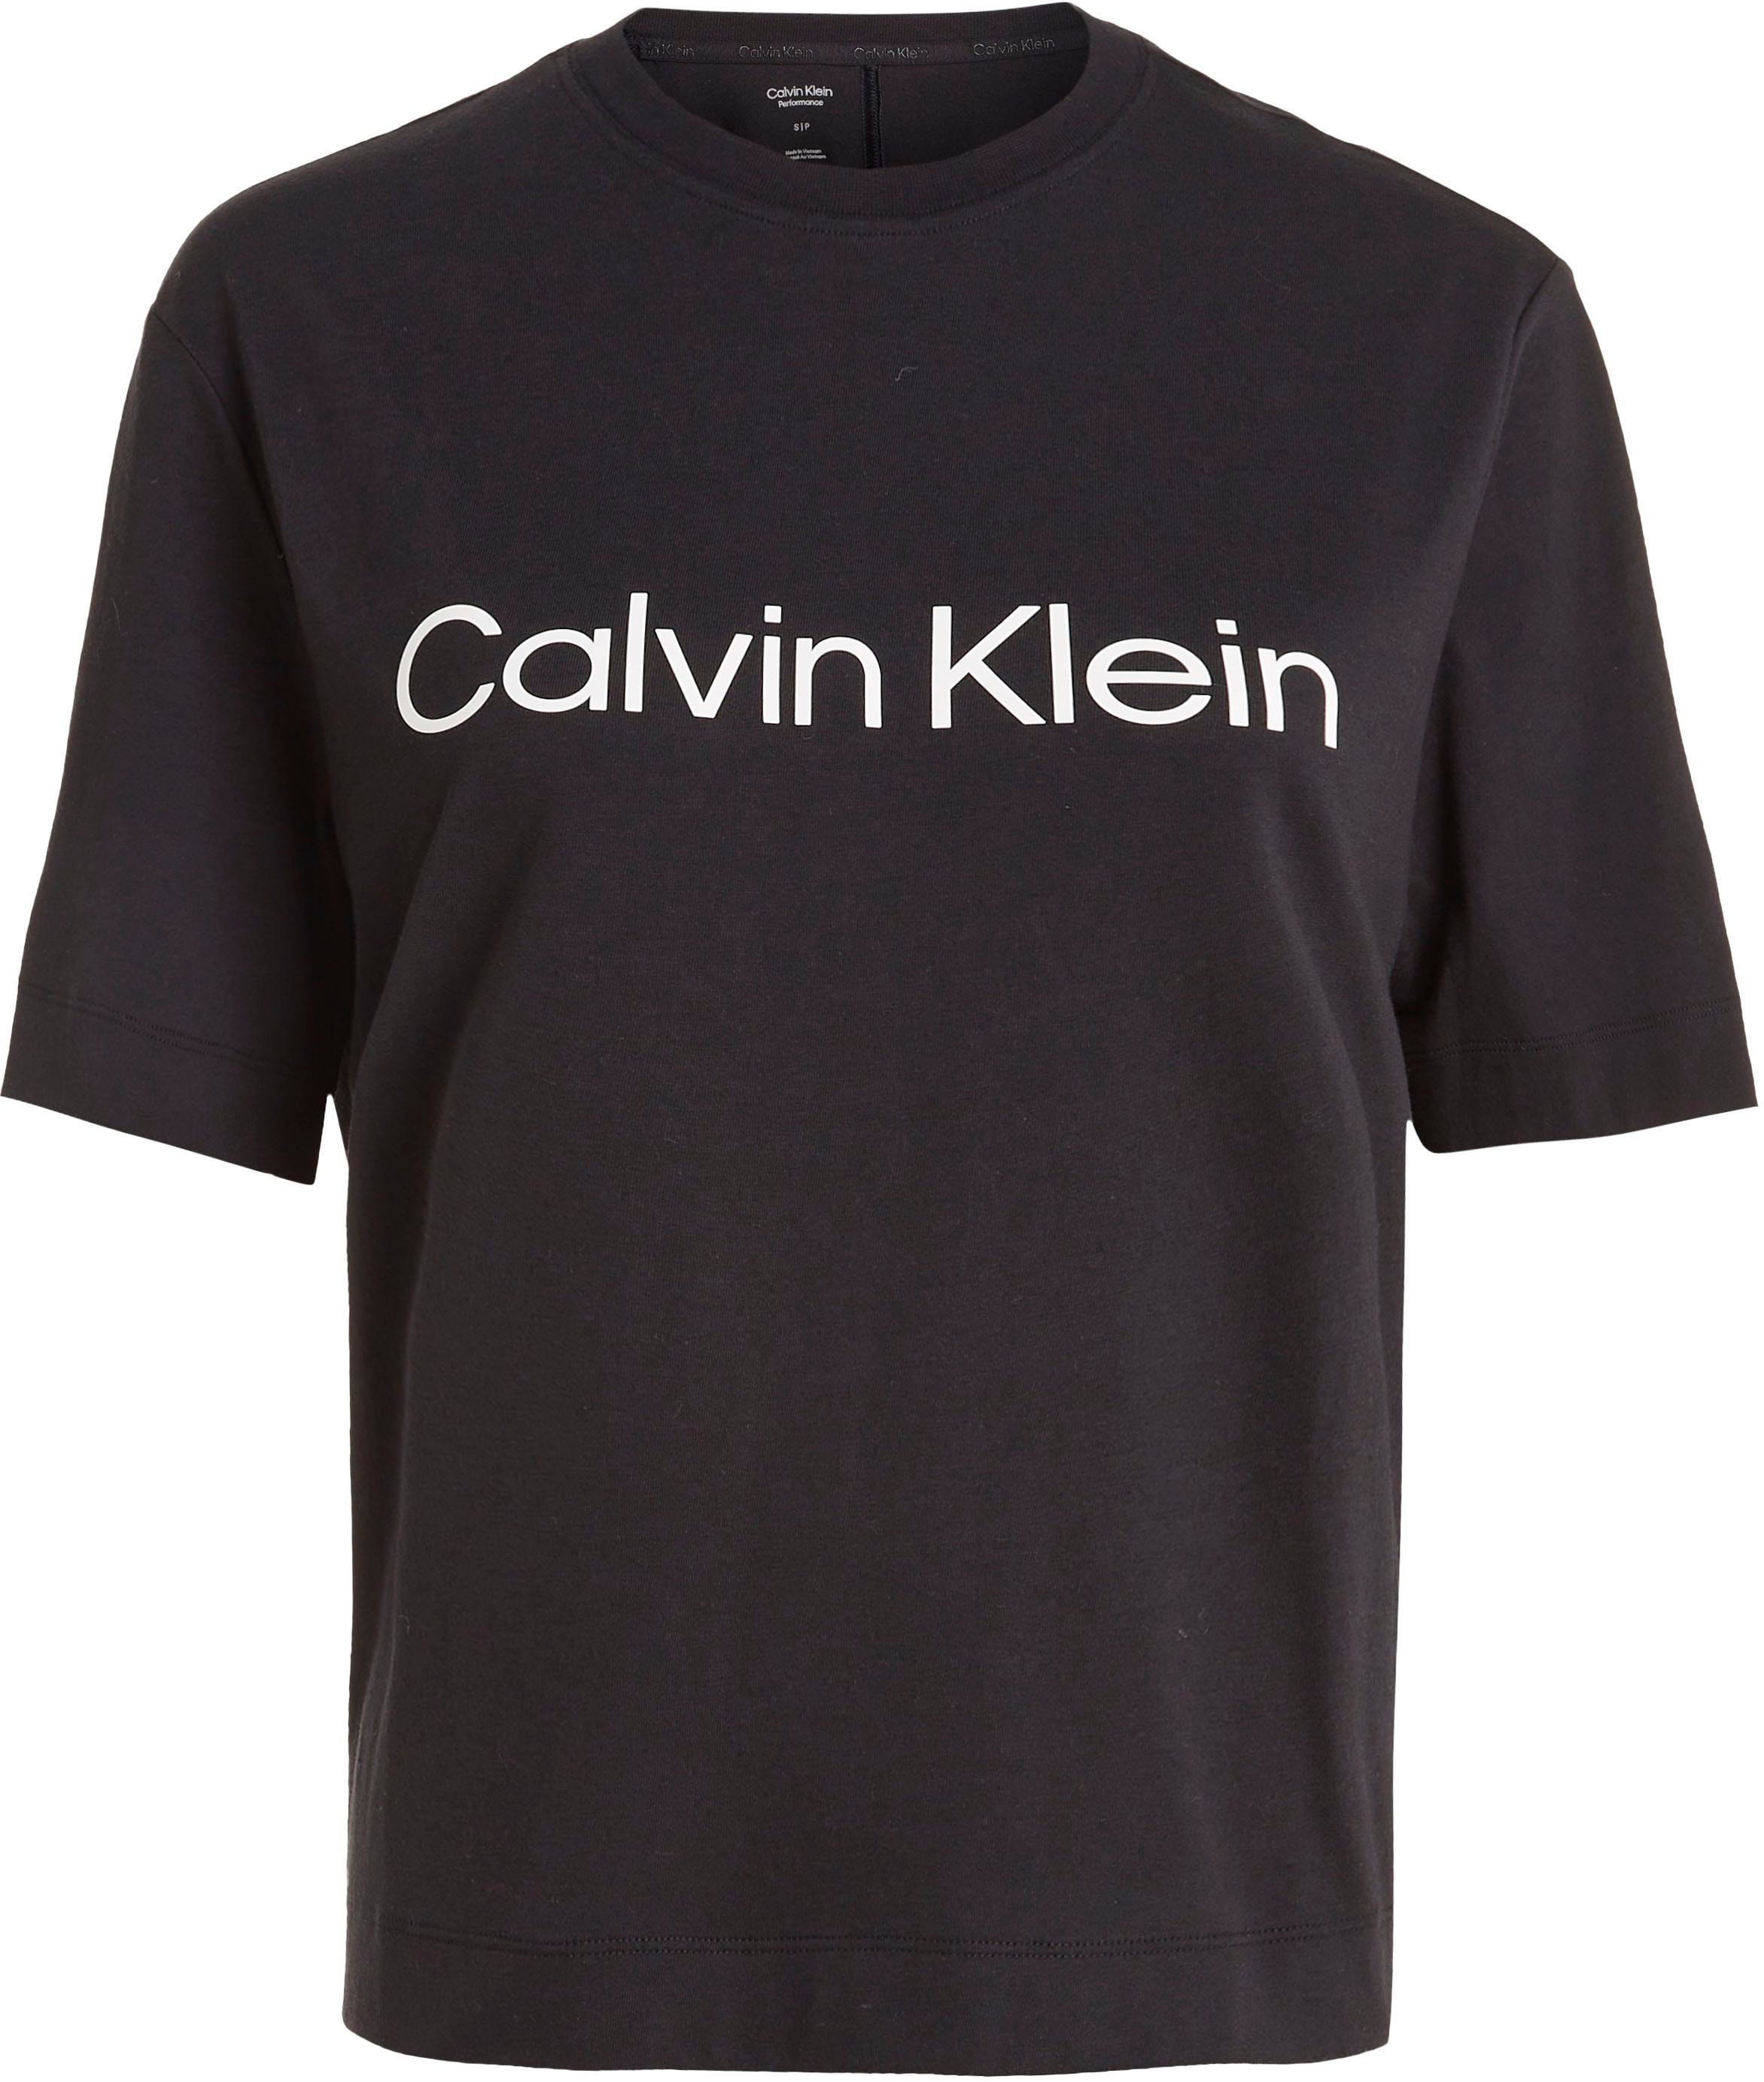 Calvin Klein Sport T-Shirt online bei OTTO kaufen